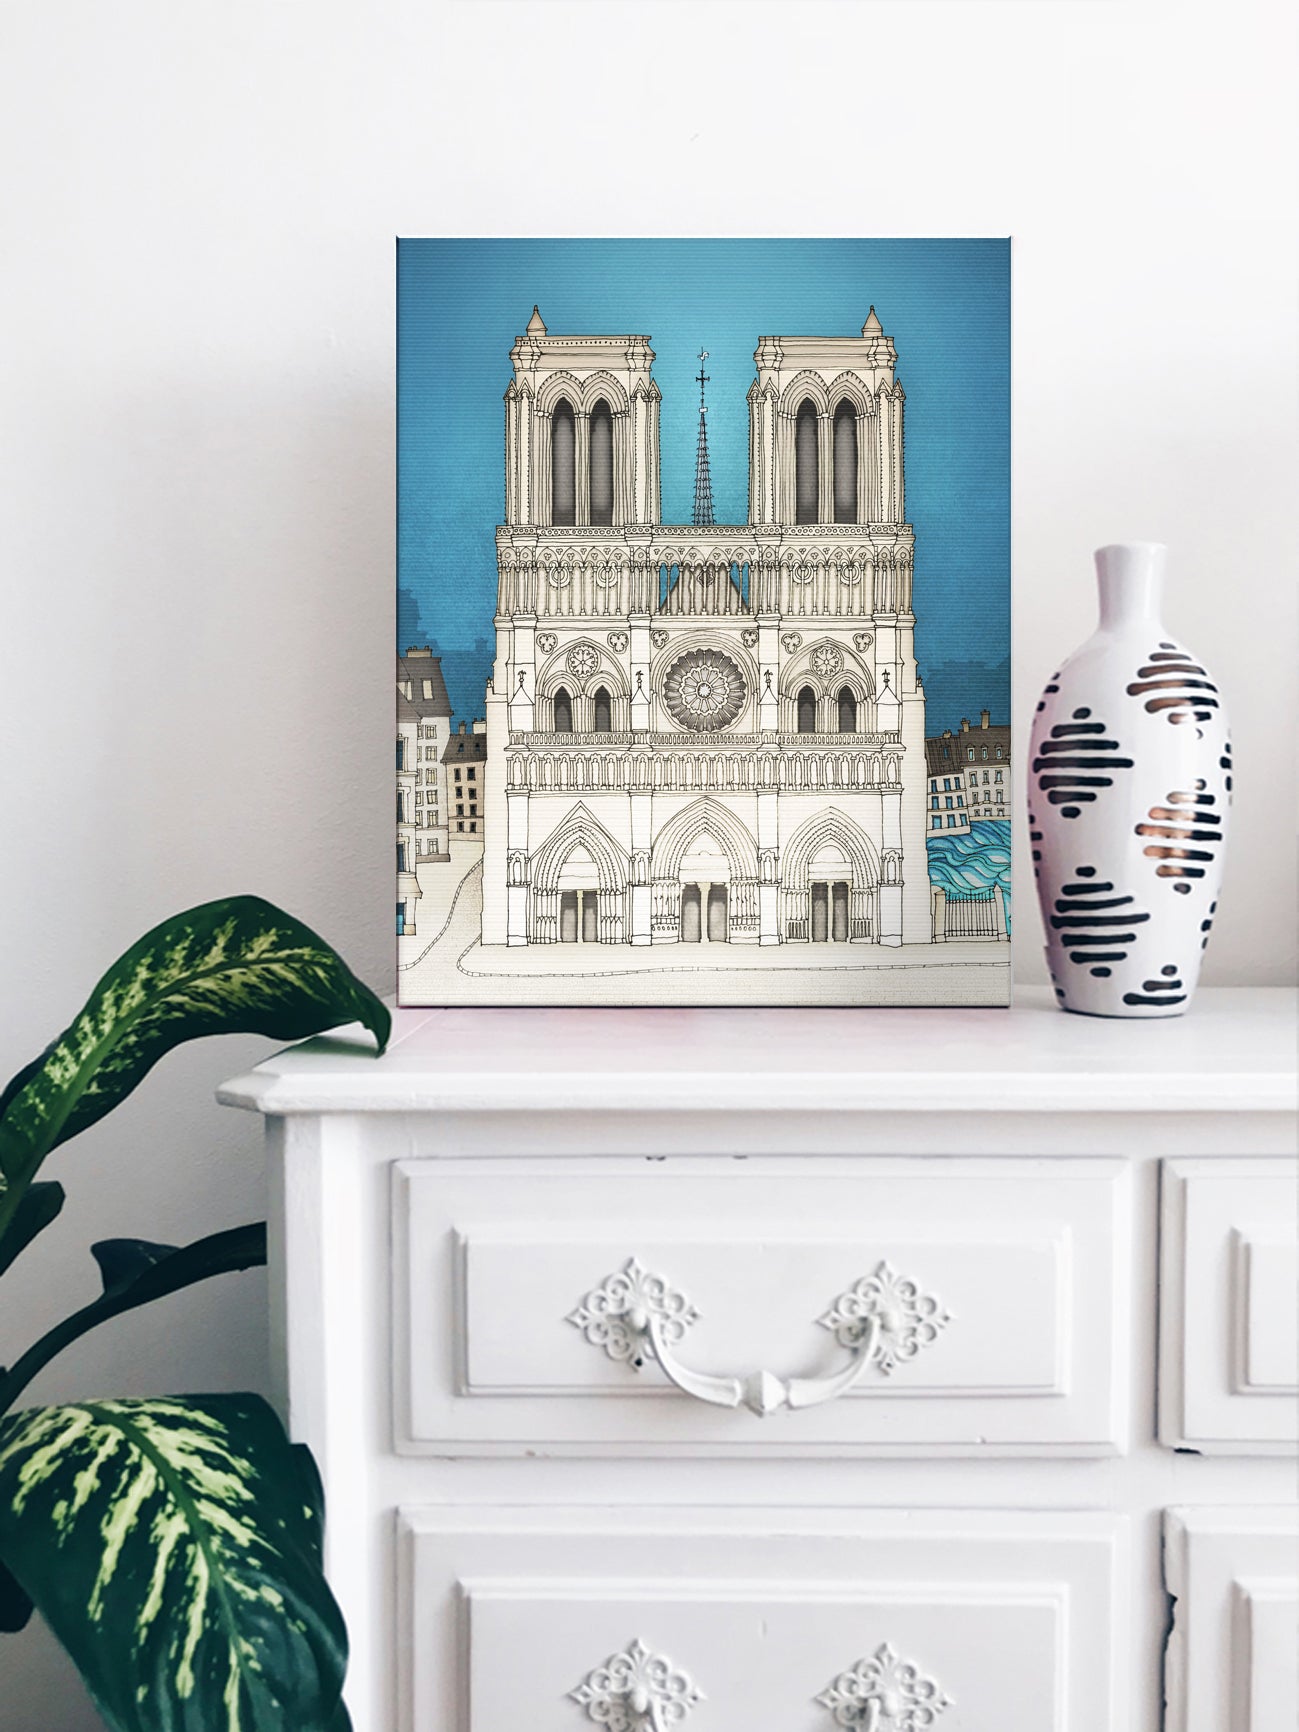 The Notre Dame in Paris (blue) - Canvas Art Print